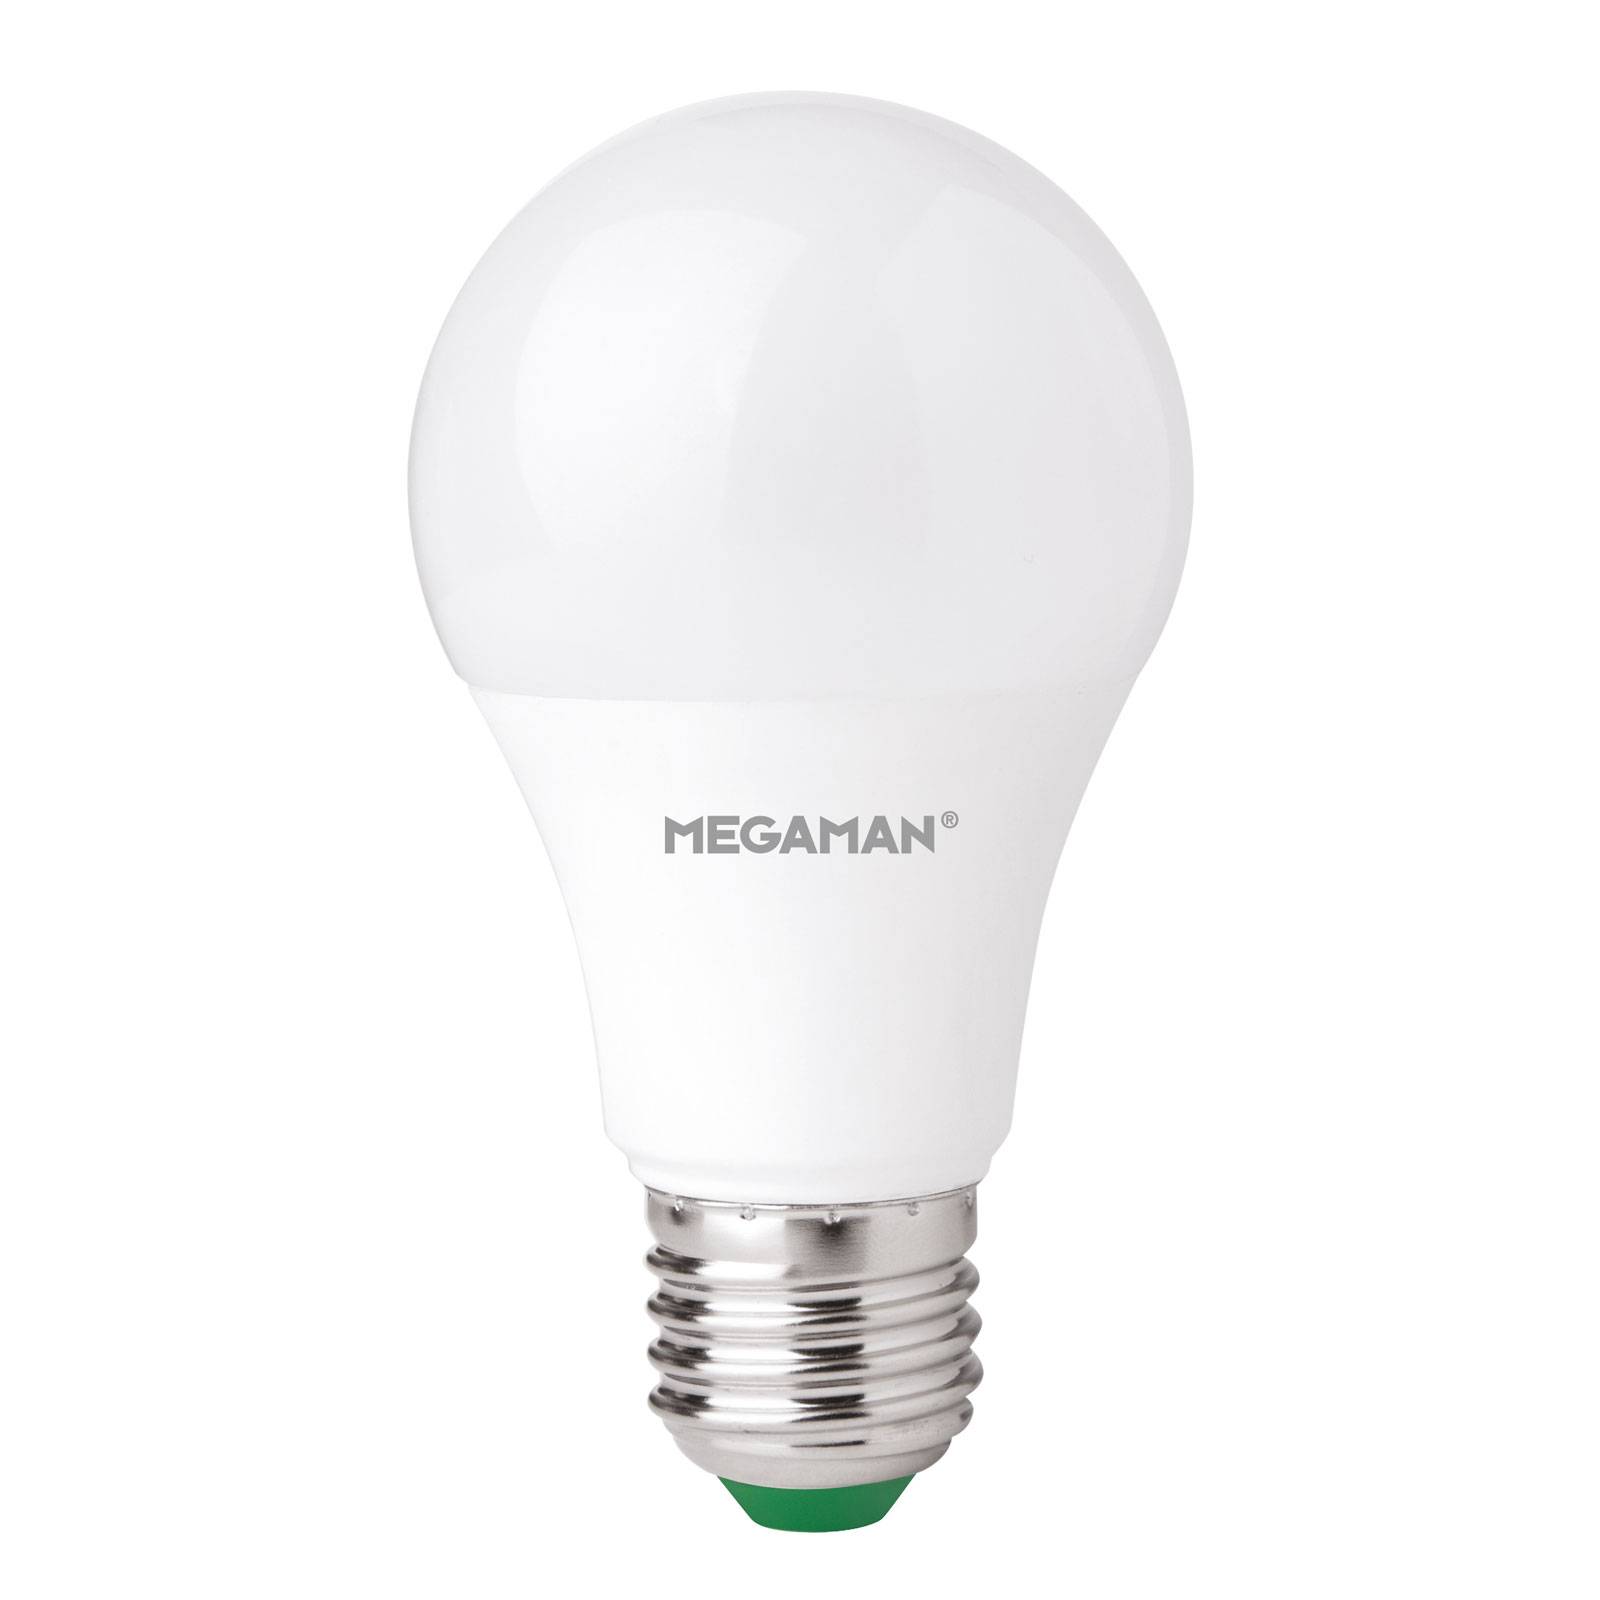 Megaman Ampoule LED E27 A60 9 W, blanc chaud, dimmable